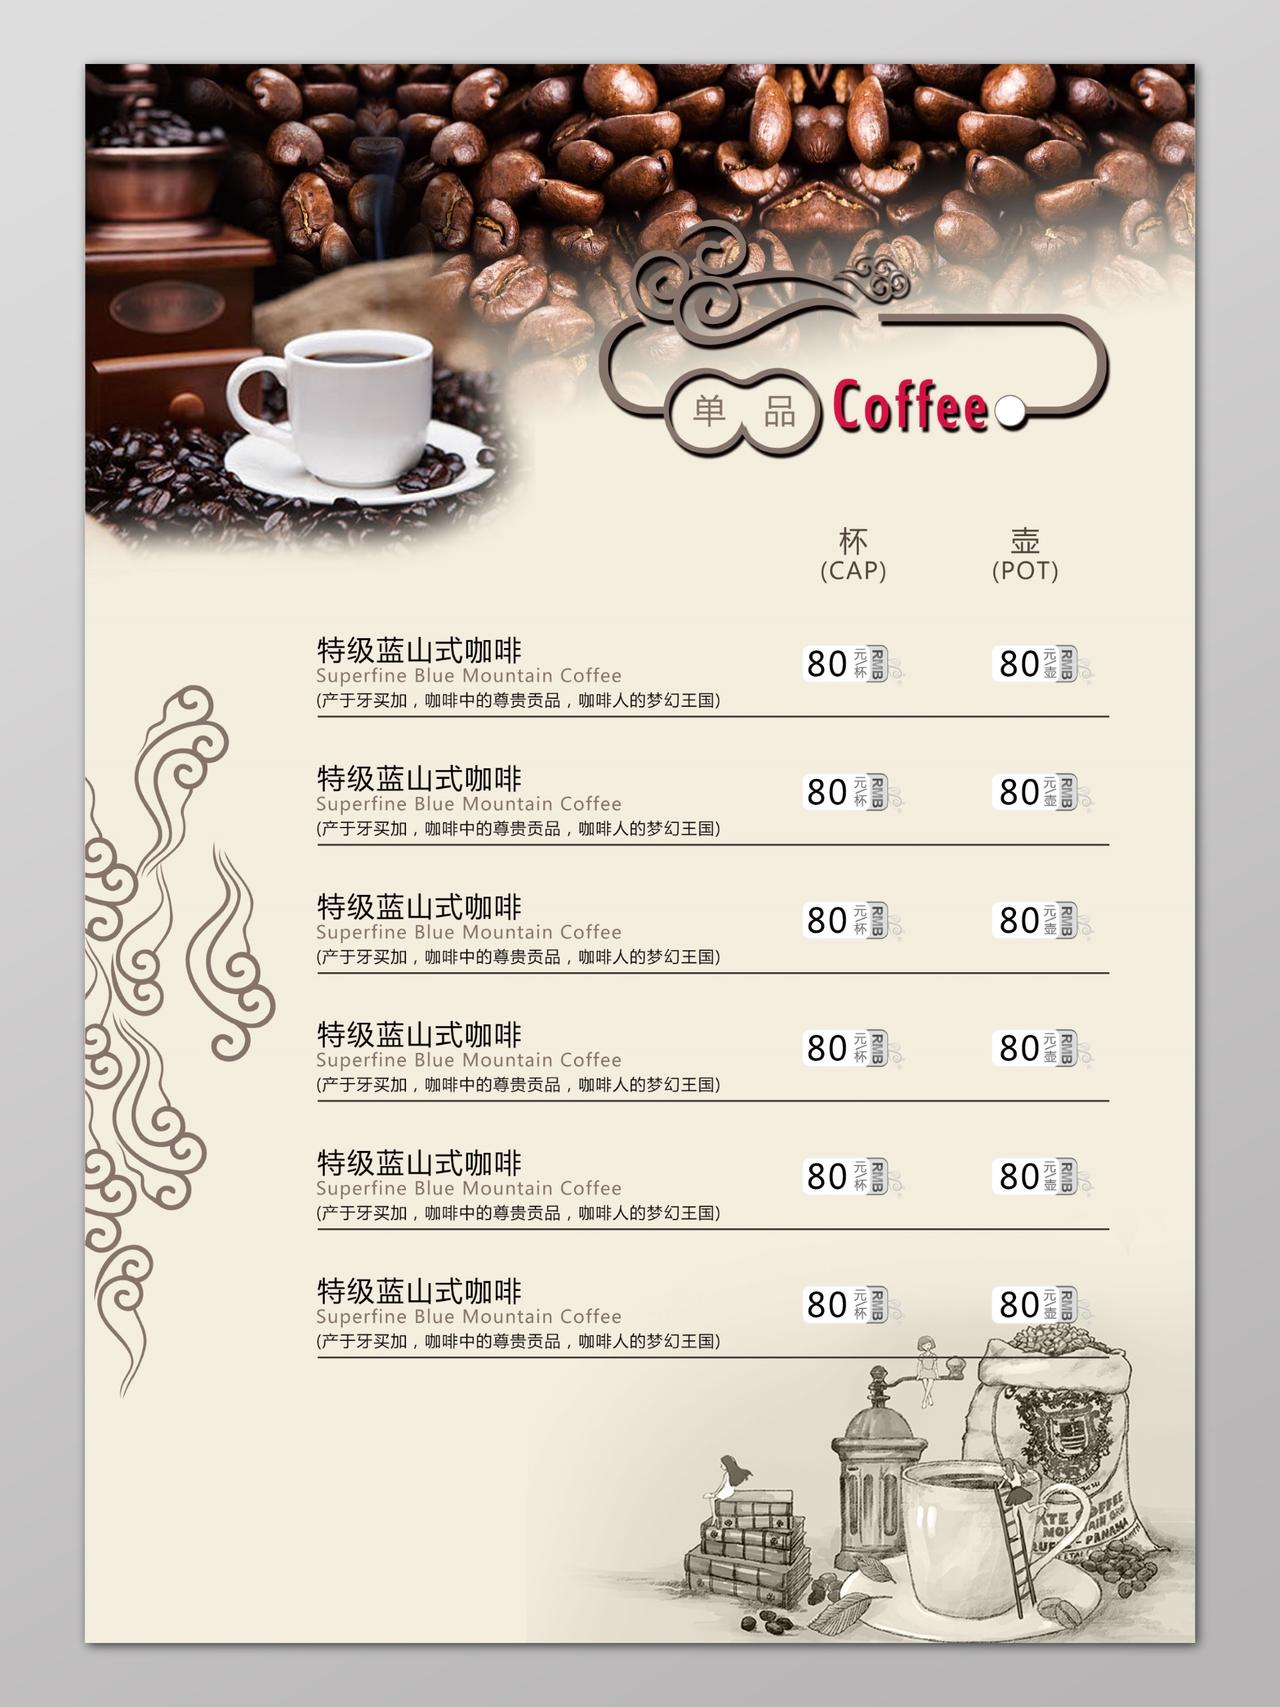 咖啡菜单饮品价格表